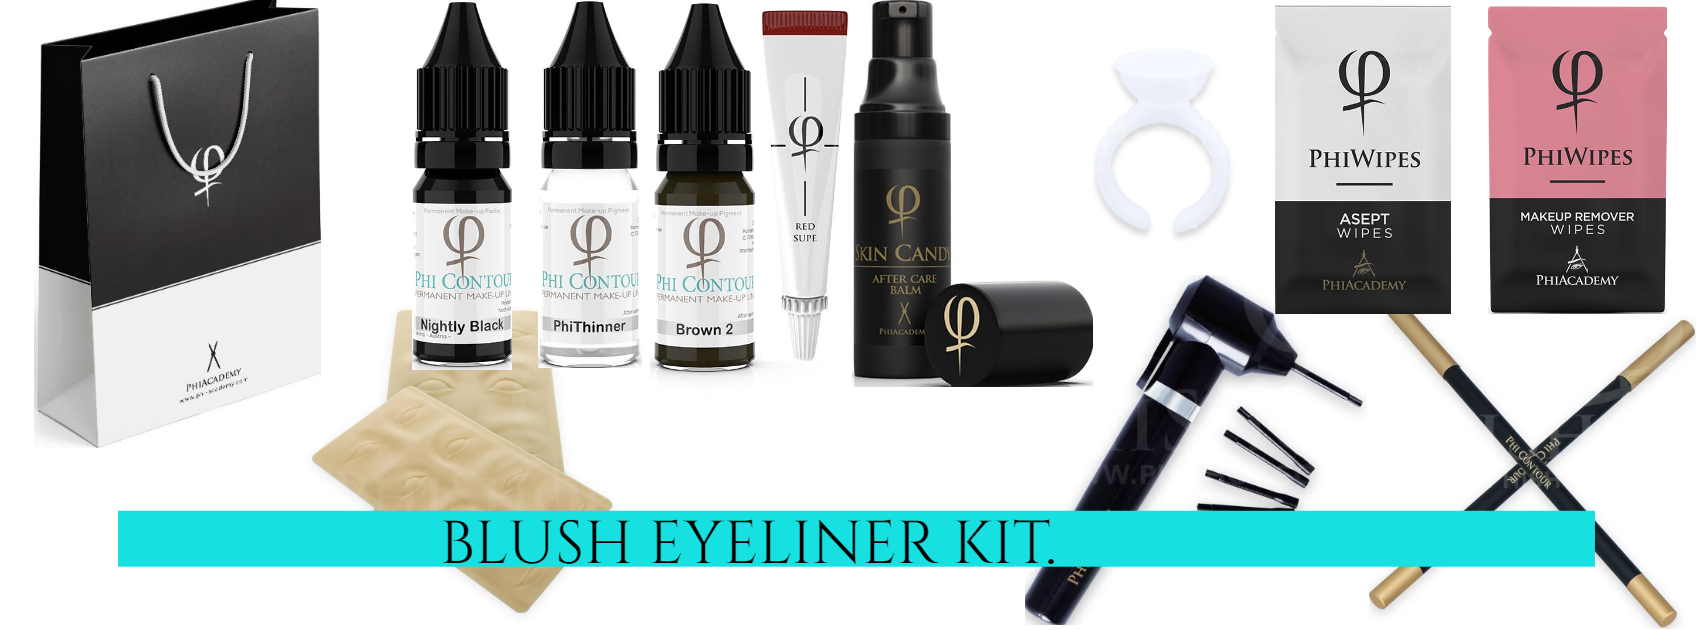 blush eyeliner kit